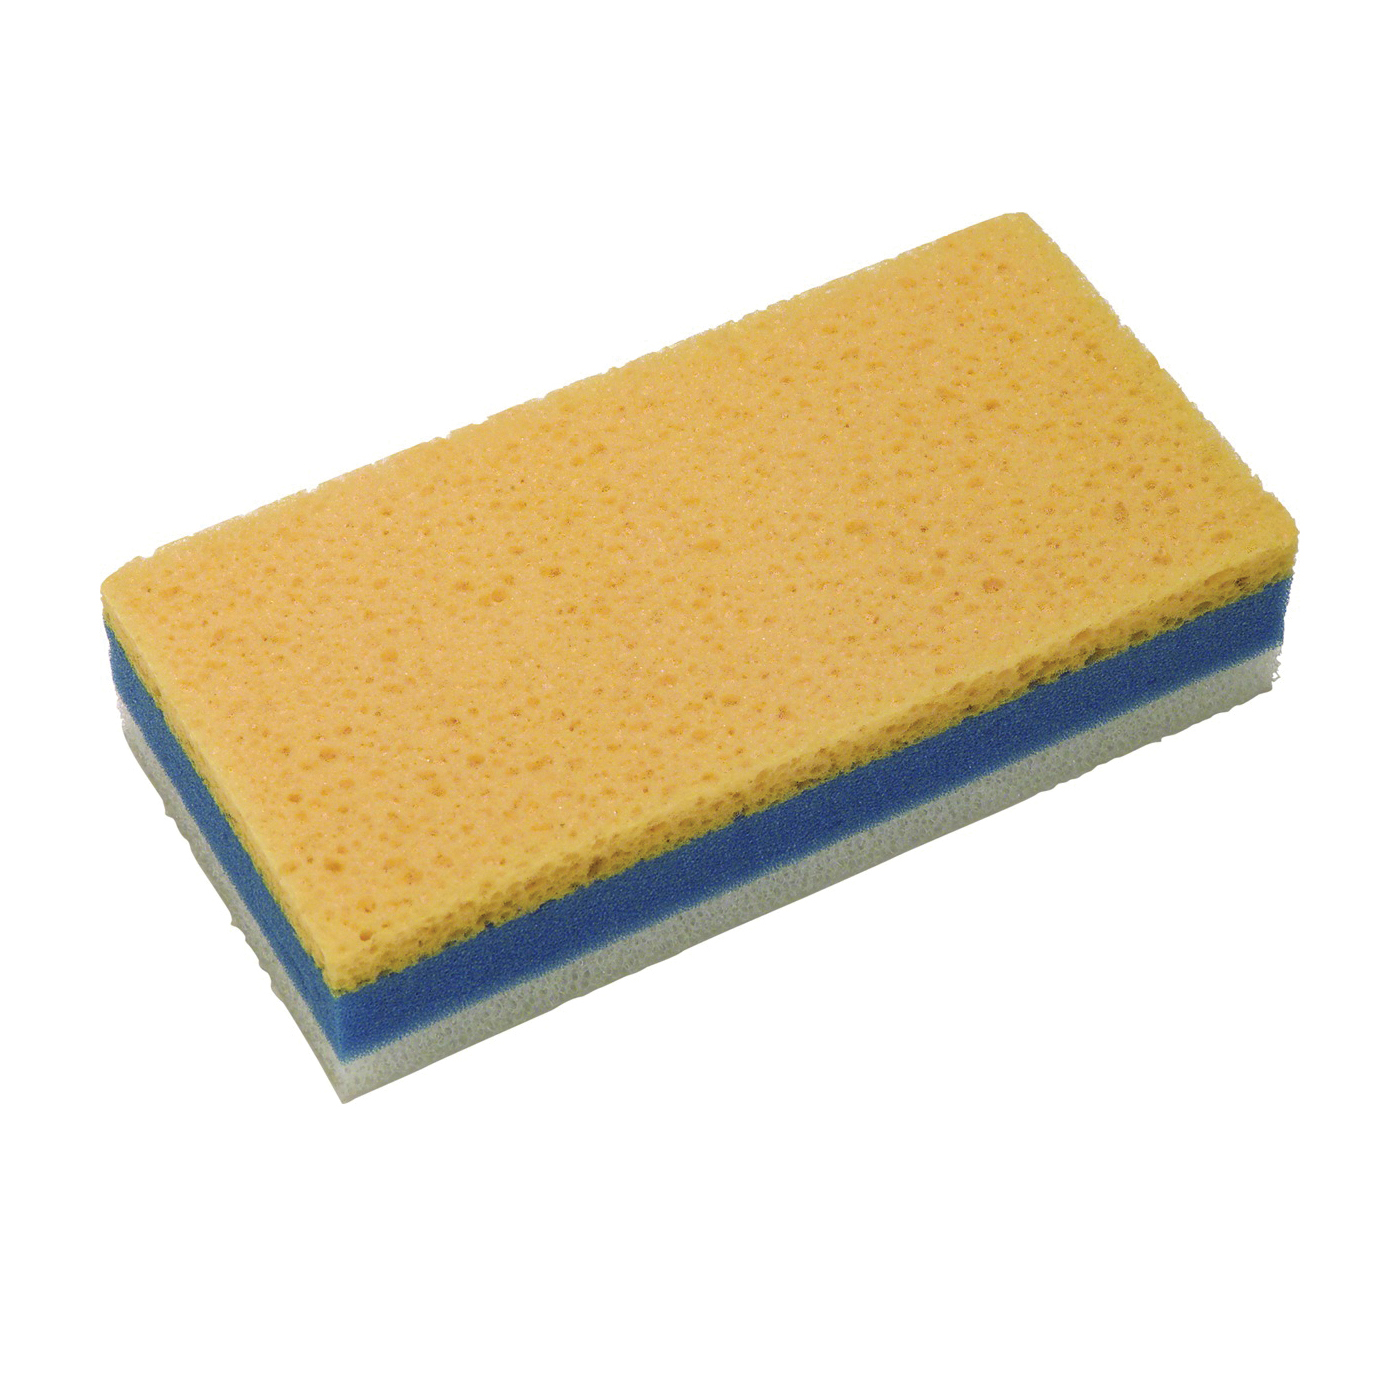 45390 Sanding Sponge, 9 in L, 4-1/2 in W, Extra Fine